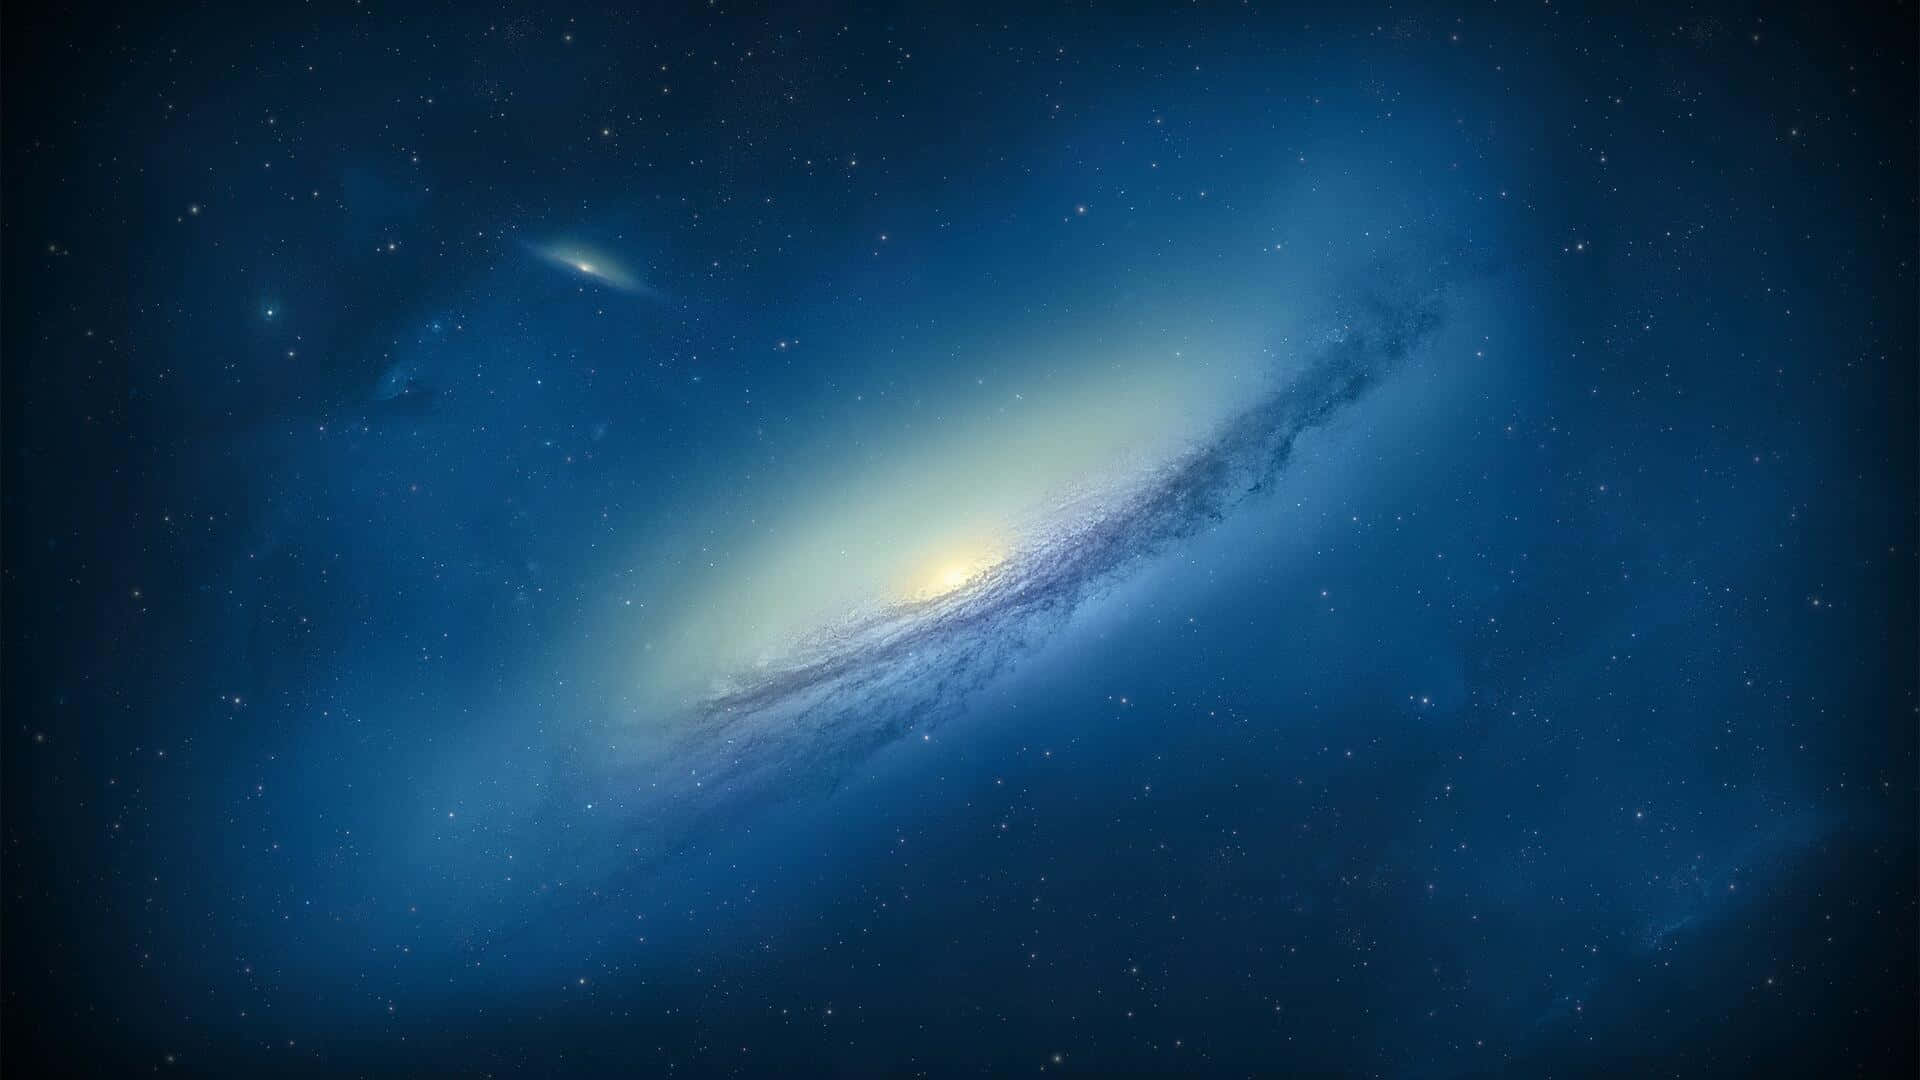 Contemplala Belleza De Nuestro Universo Con Esta Impresionante Imagen En 4k De La Galaxia De Andrómeda. Fondo de pantalla